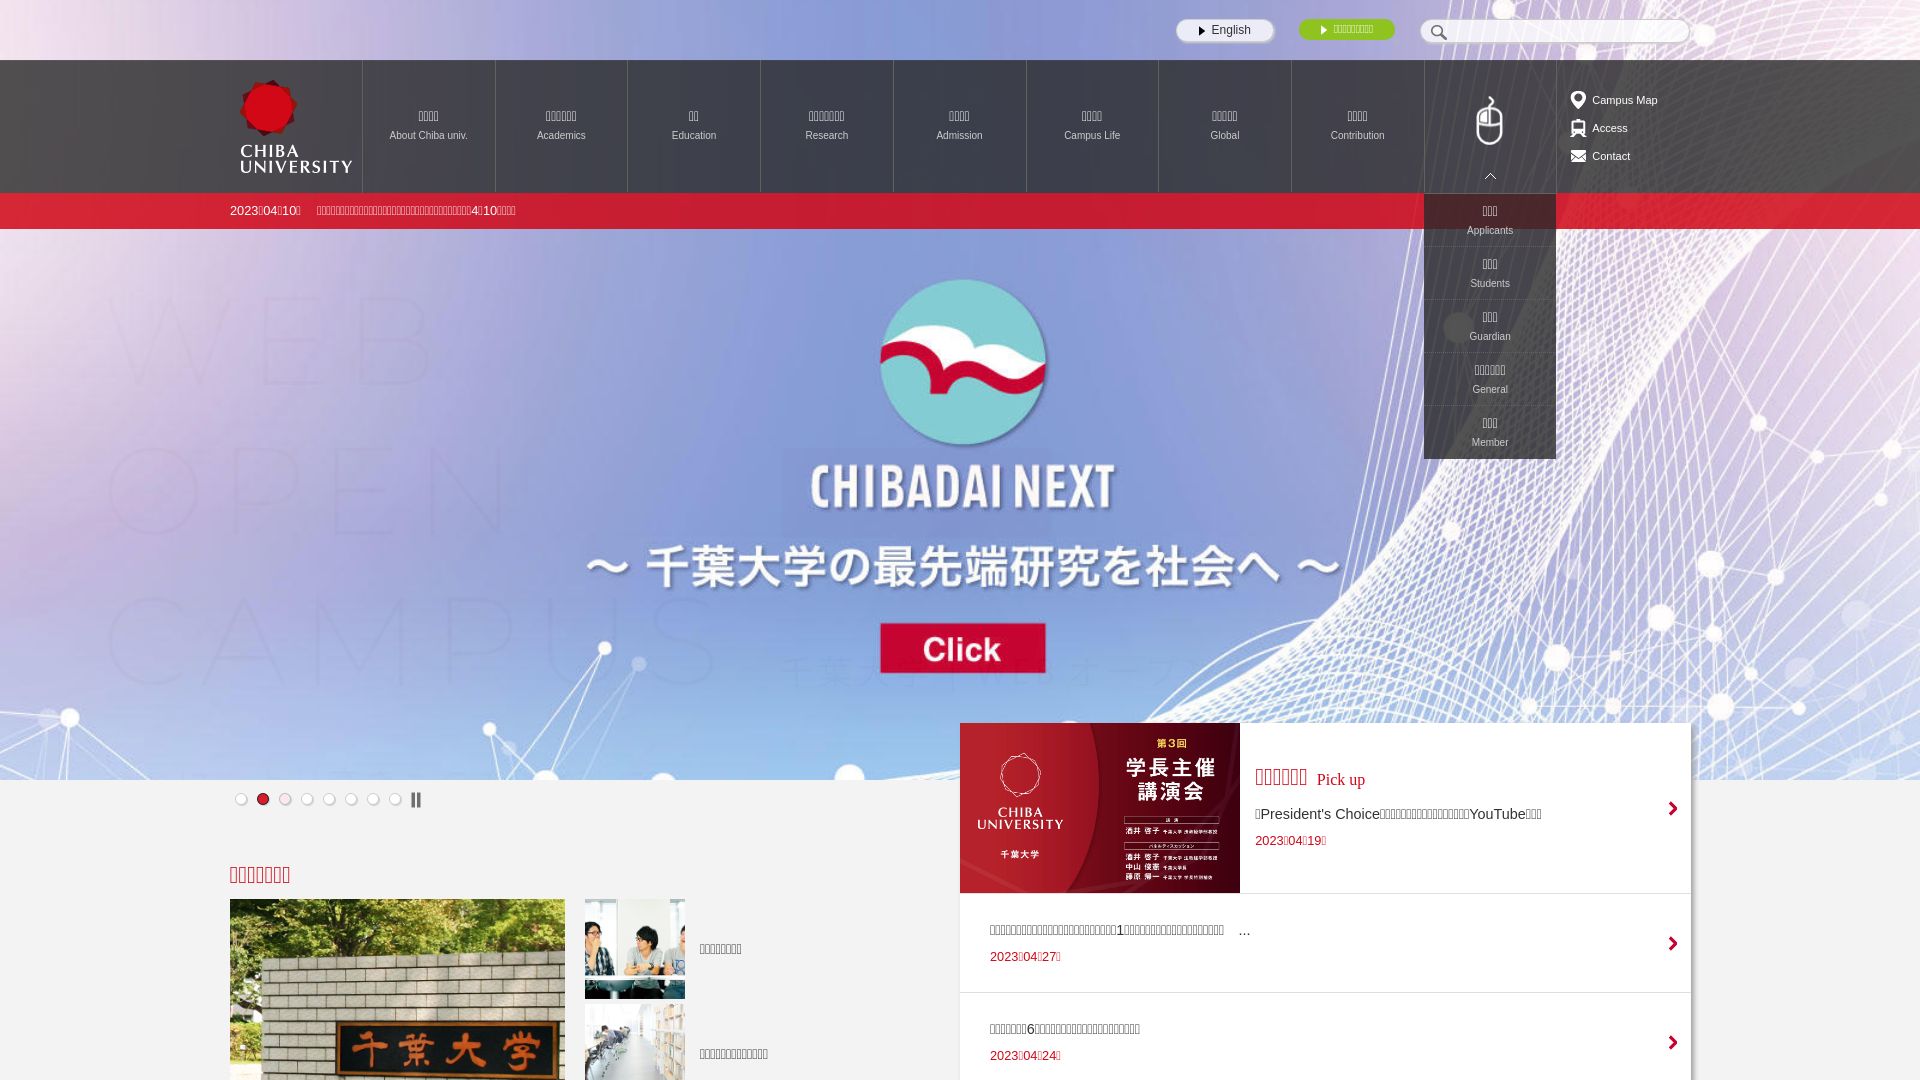 Website status chiba-u.ac.jp is   ONLINE